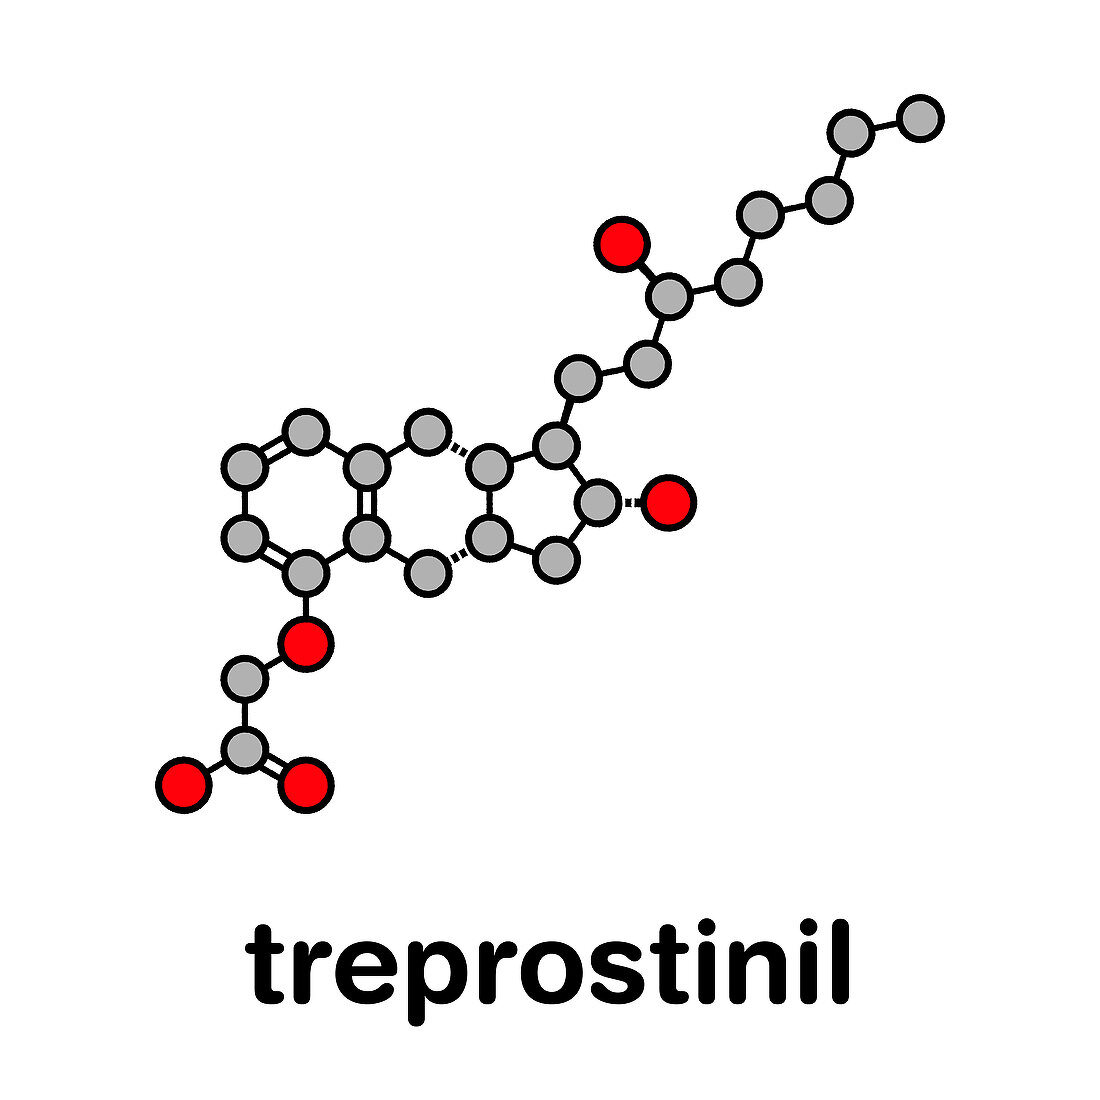 Treprostinil pulmonary hypertension drug, molecular model